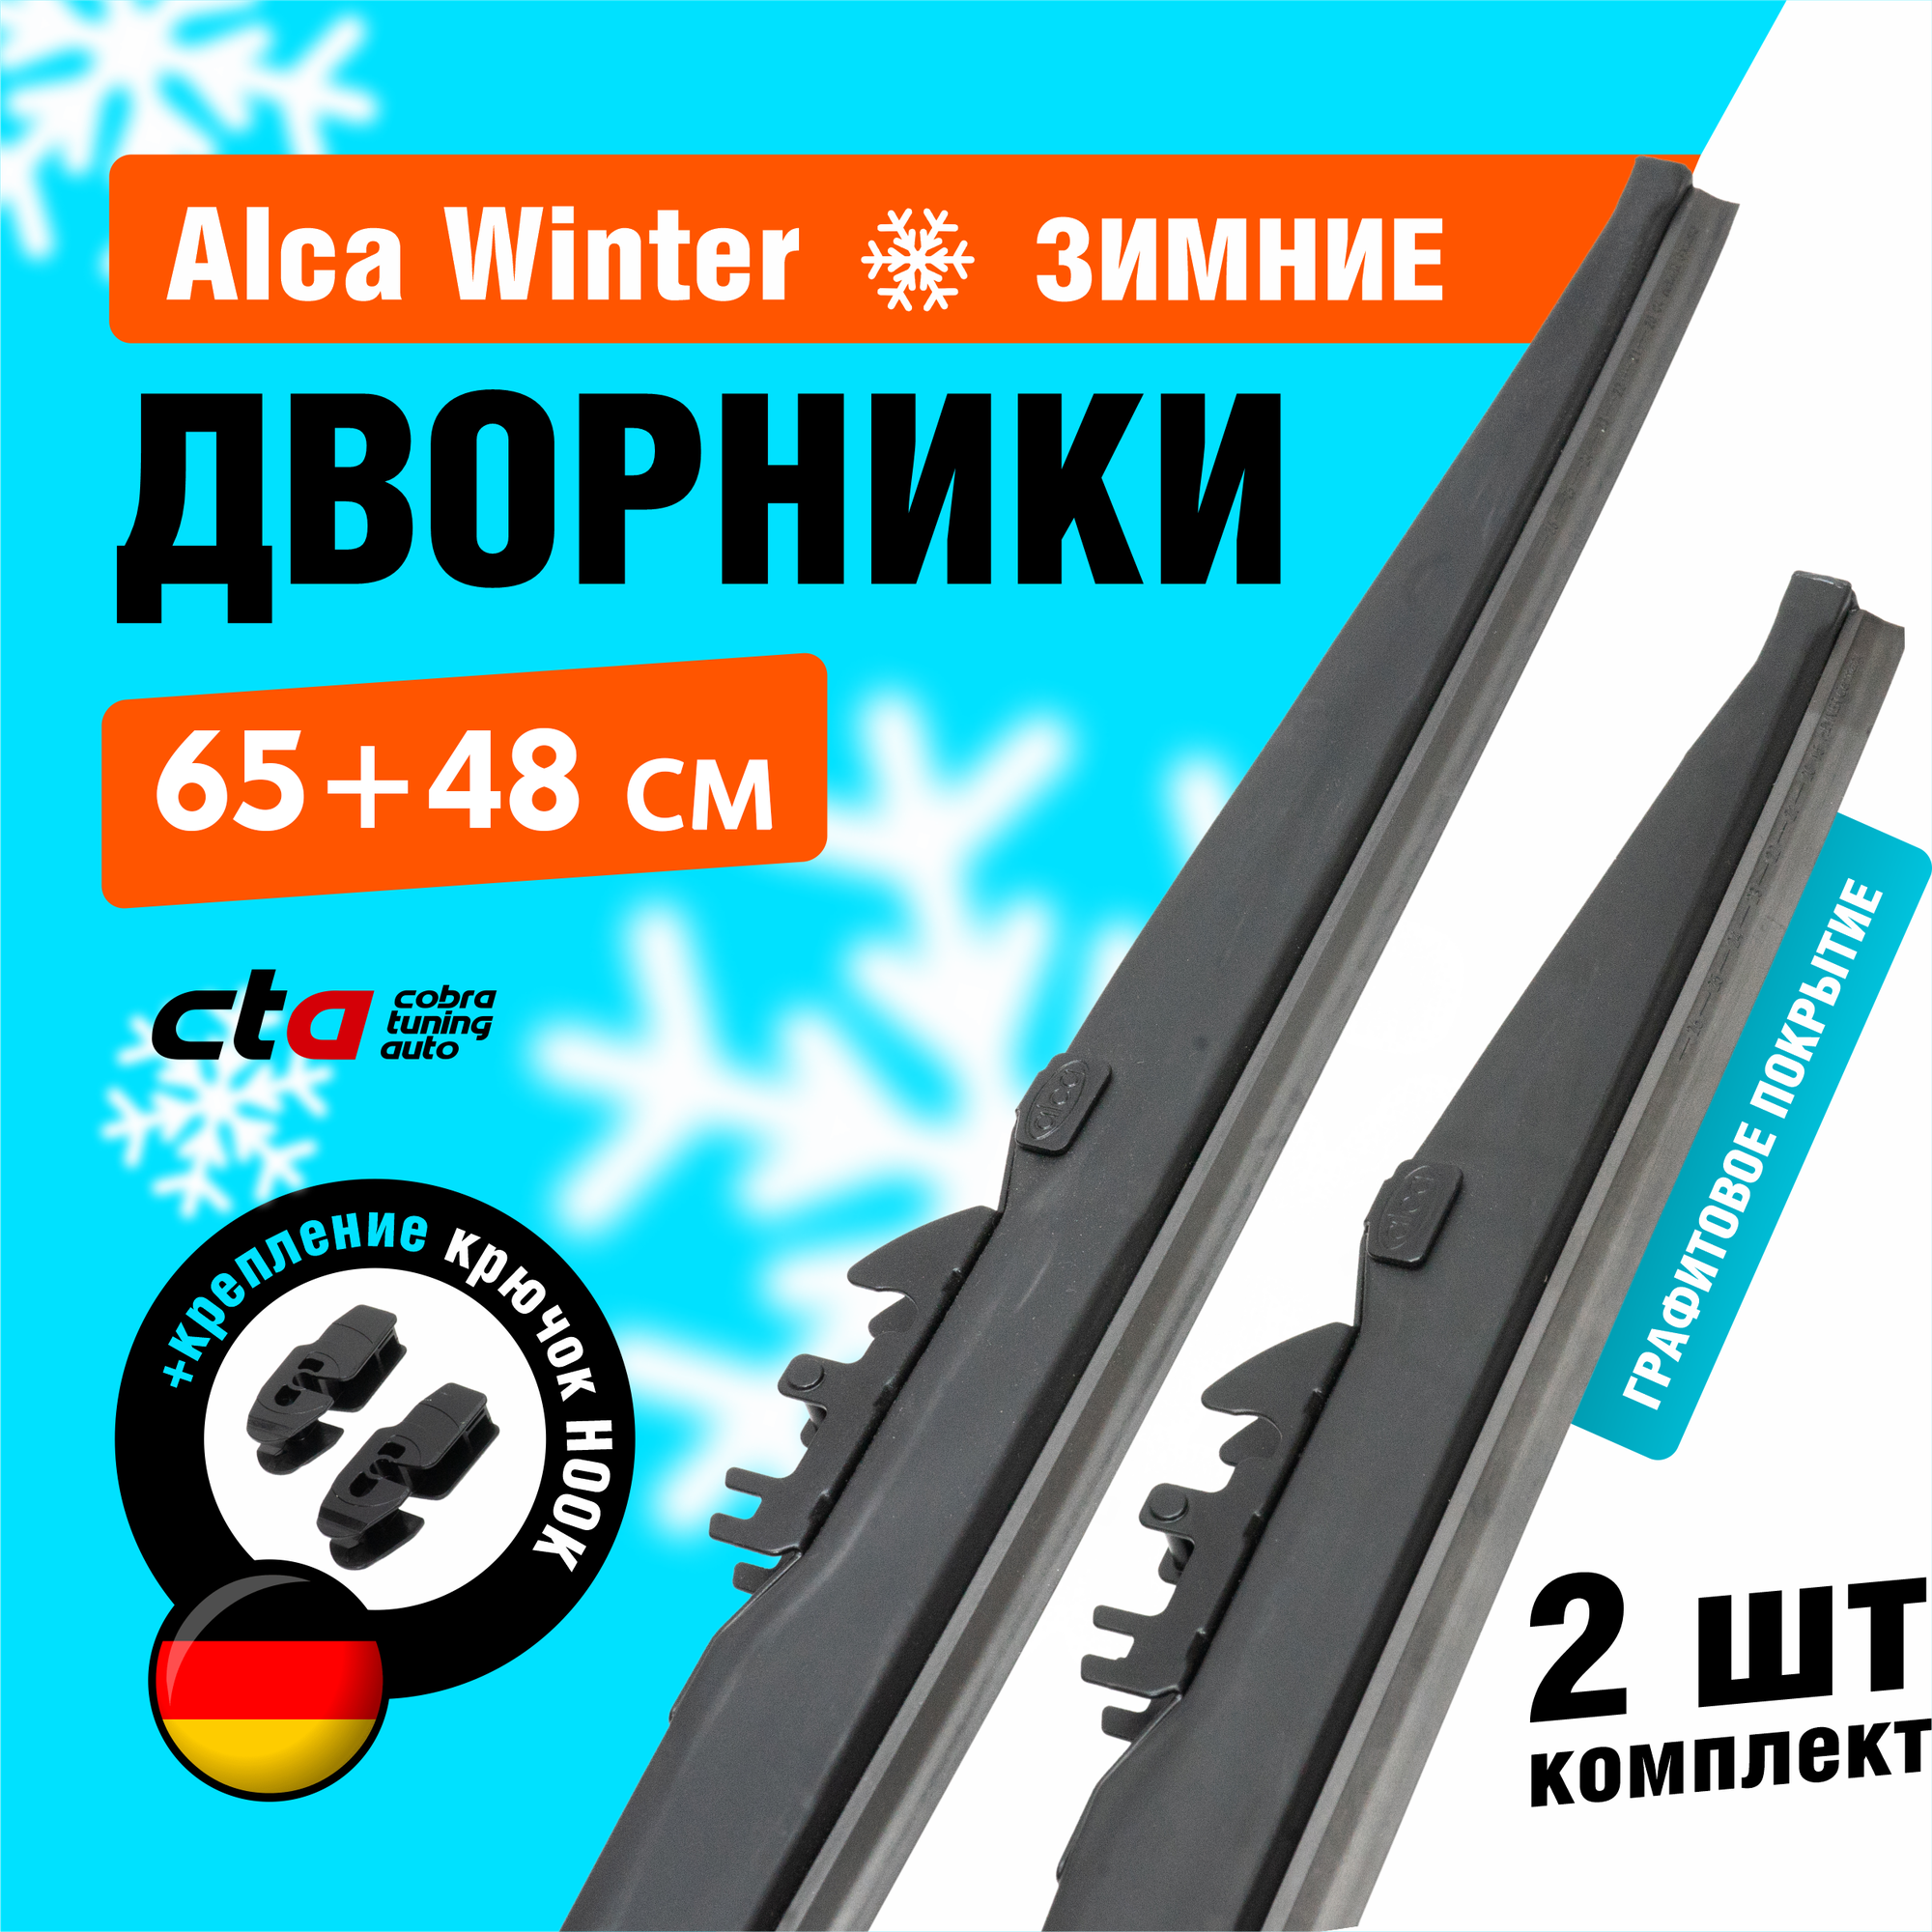 Щетки стеклоочистителя 650/480 мм, Alca Winter зимние дворники для автомобиля, комплект 2 шт.